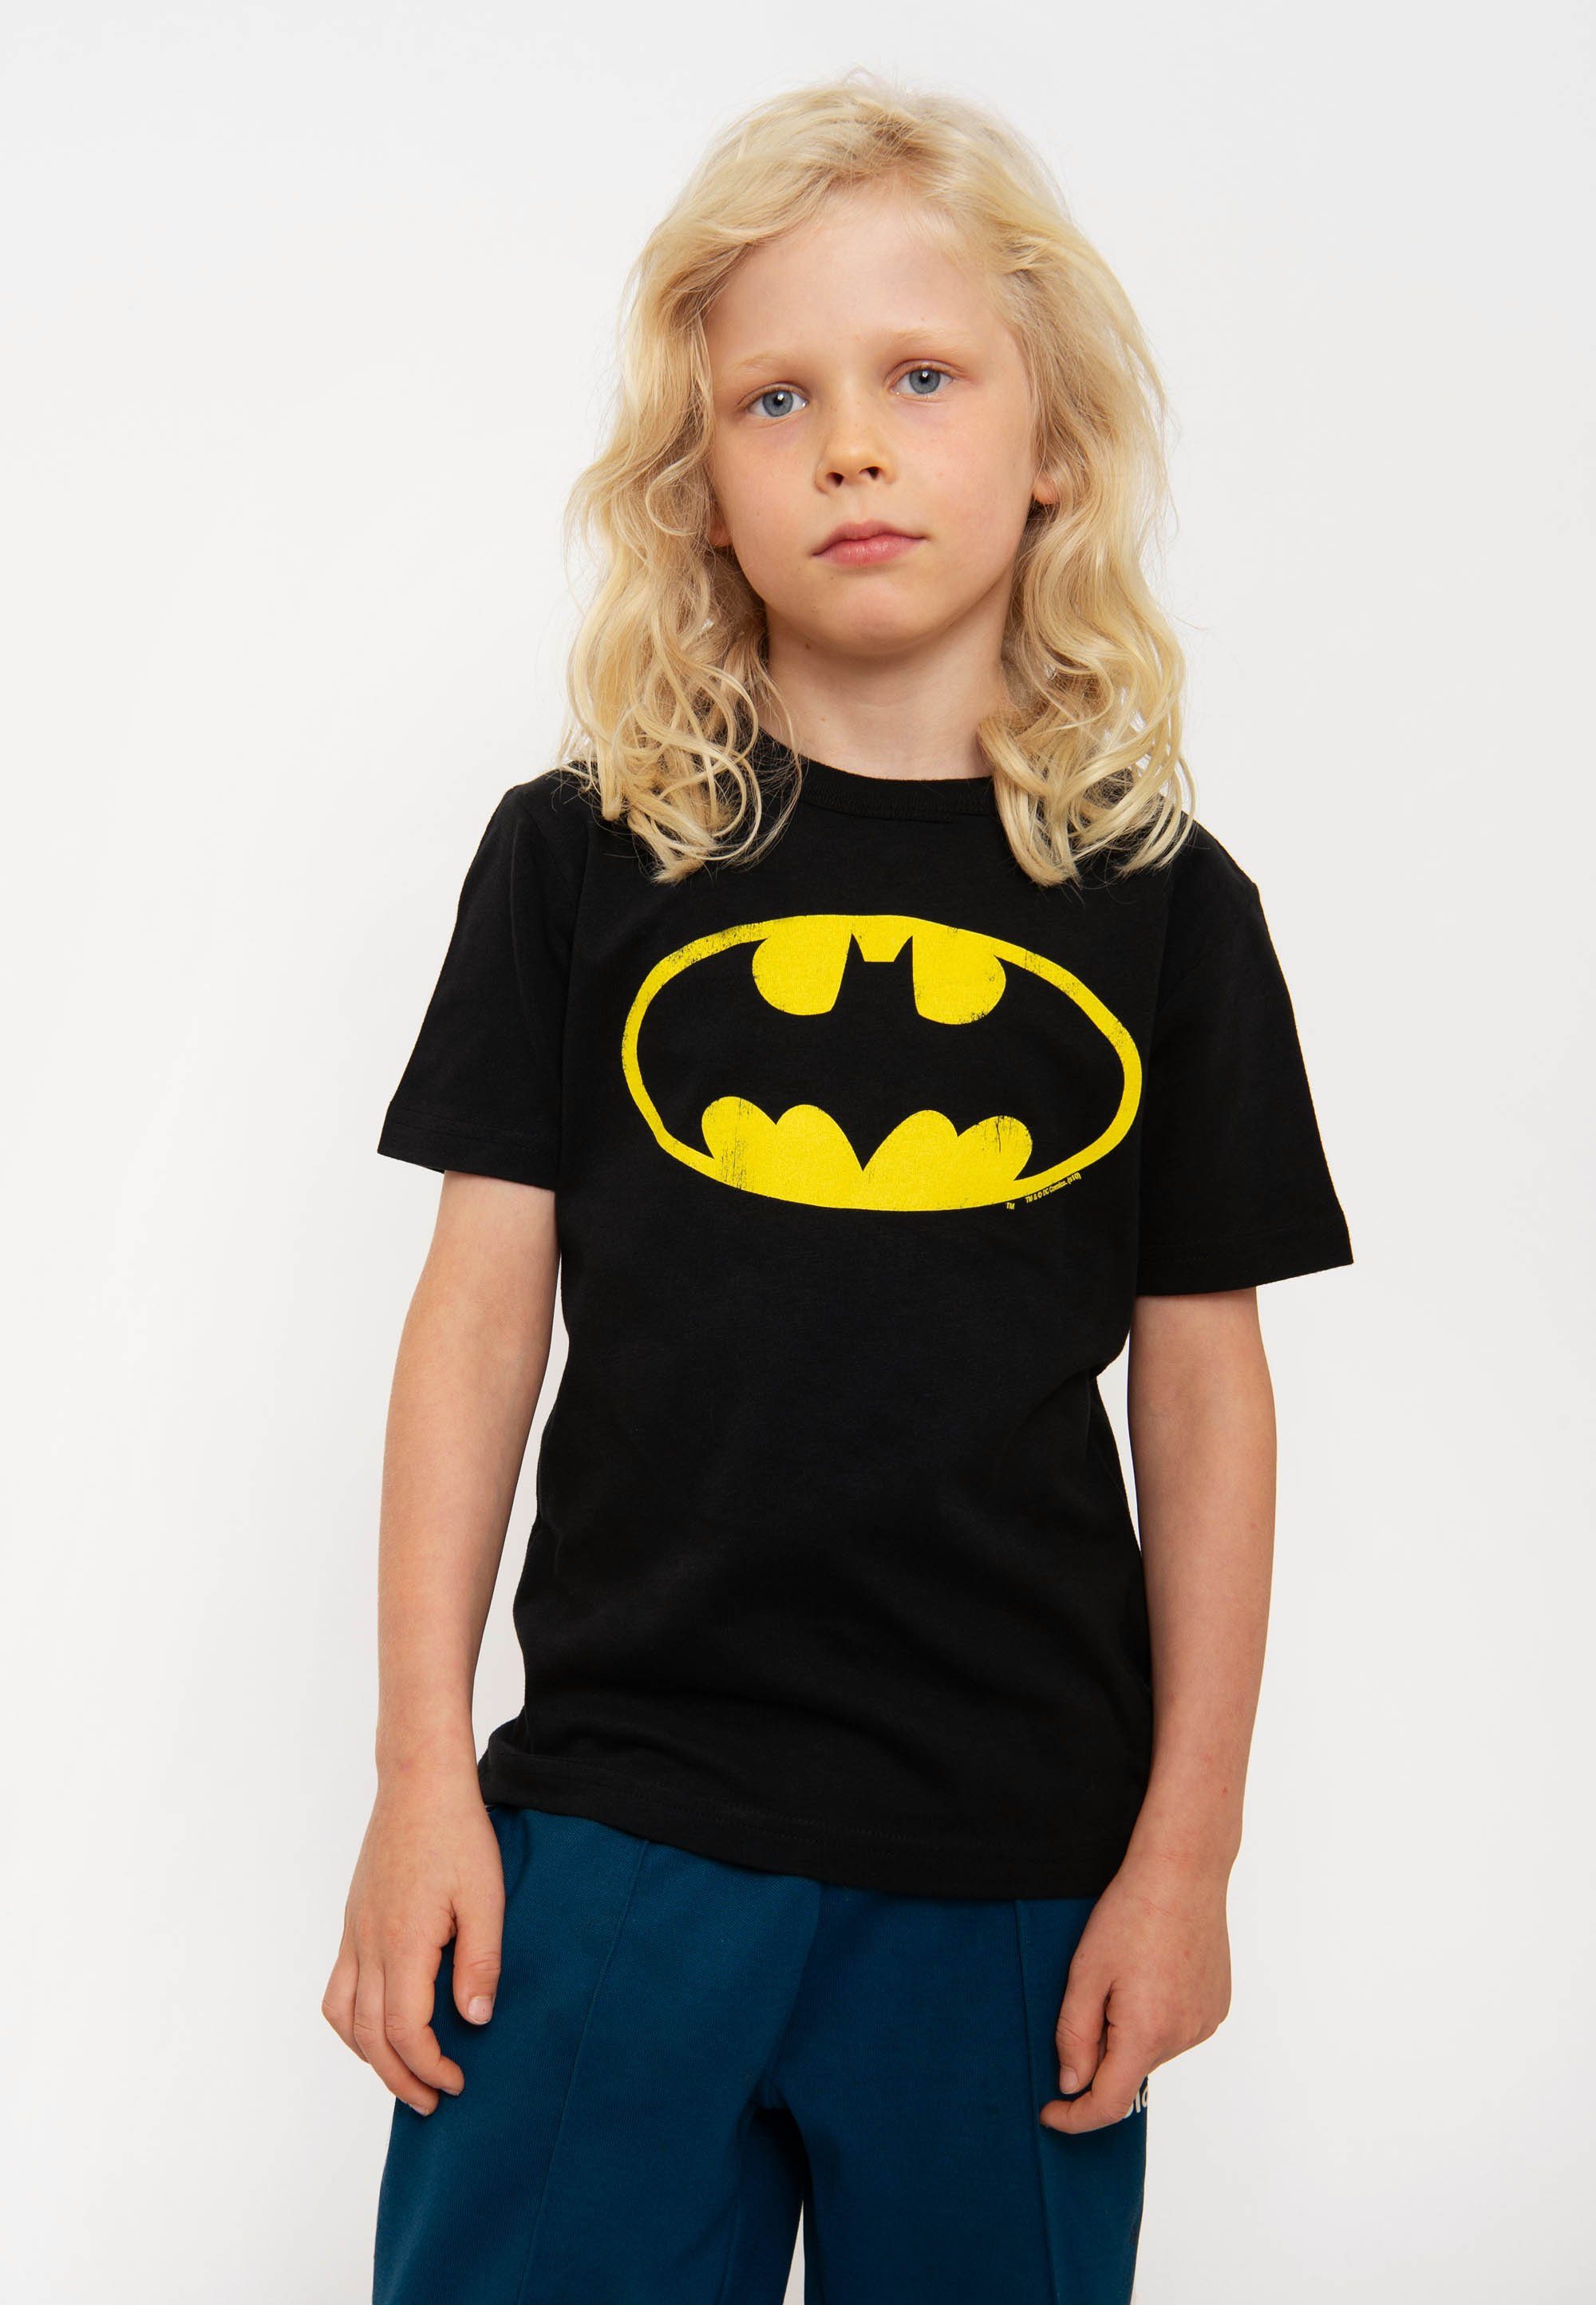 Kaufentscheidung LOGOSHIRT T-Shirt DC mit Batman Print - Comics lizenziertem